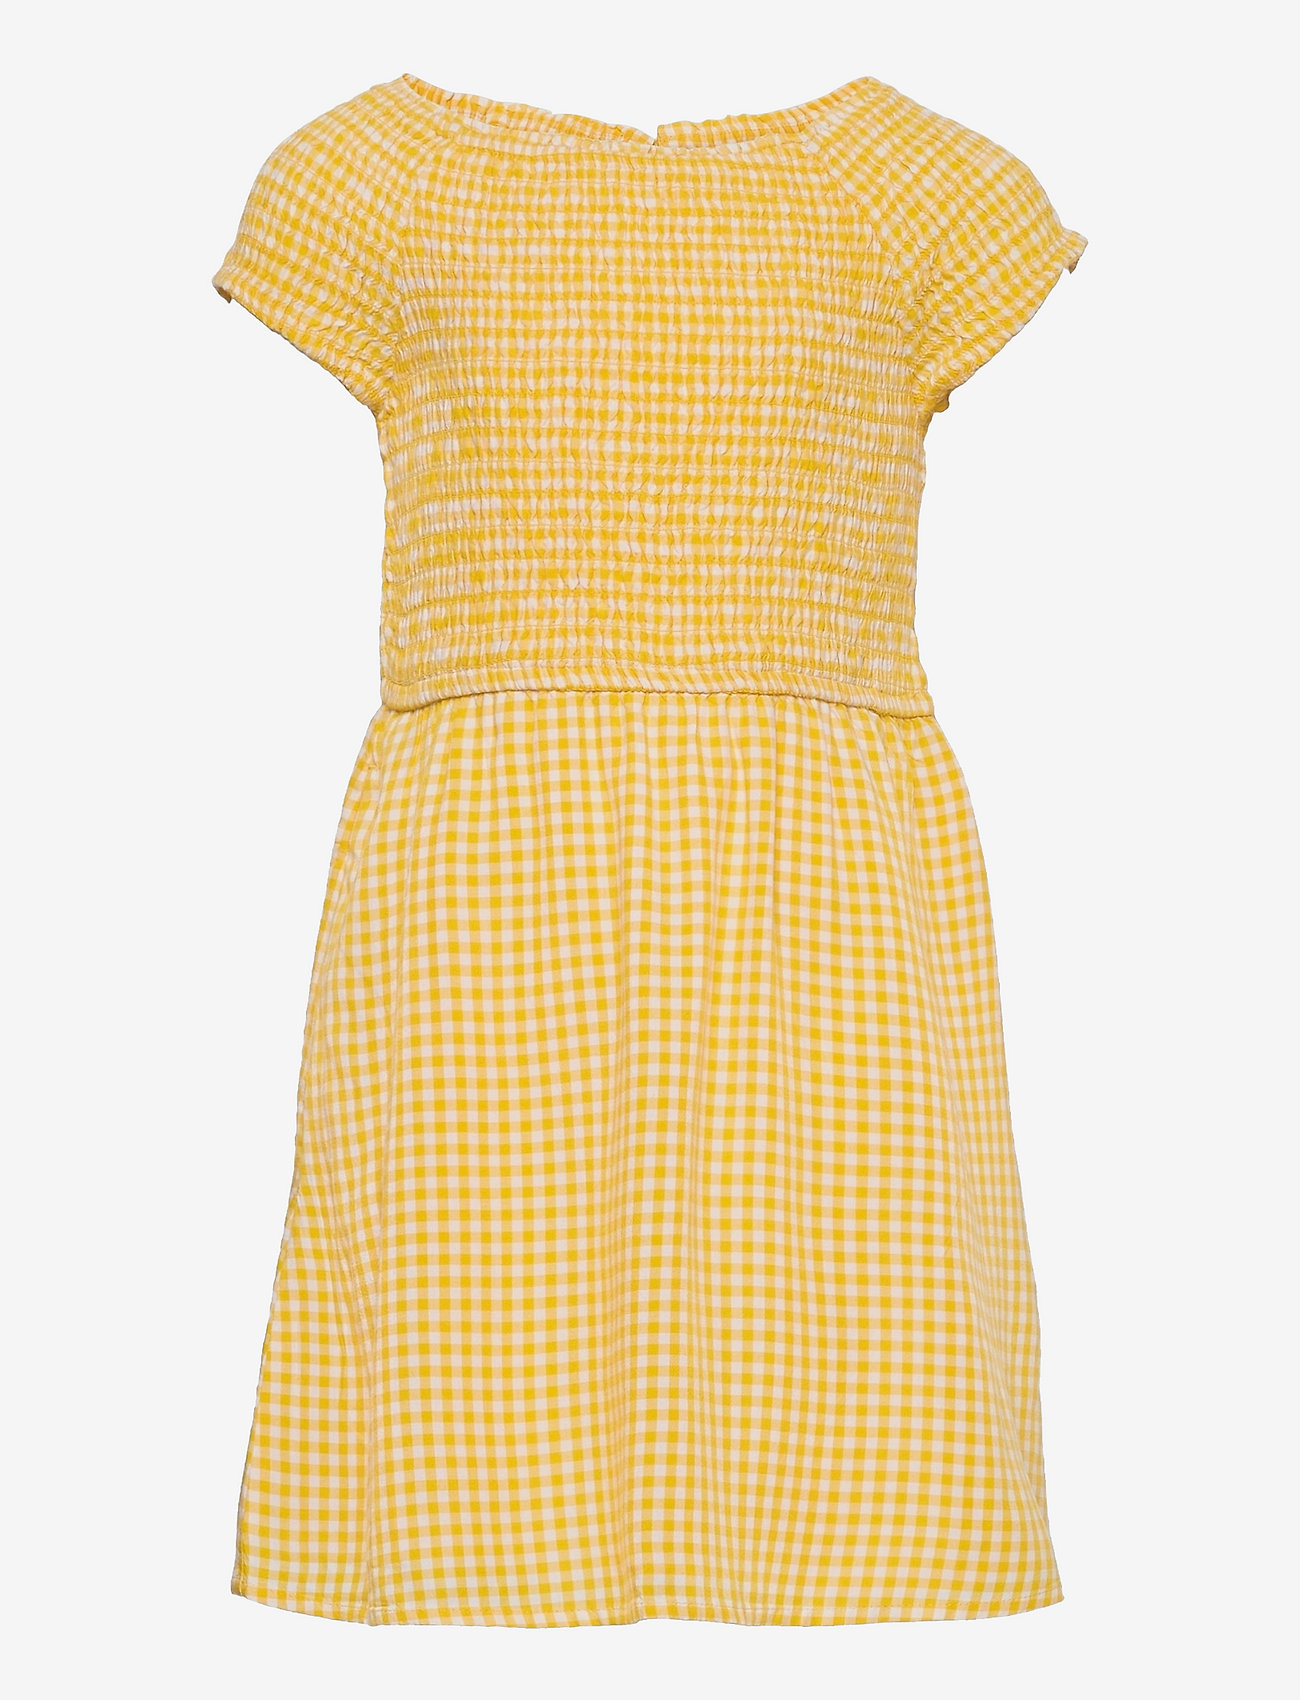 Abercrombie & Fitch - kids GIRLS DRESSES - kortermede hverdagskjoler - light yellow patt - 0